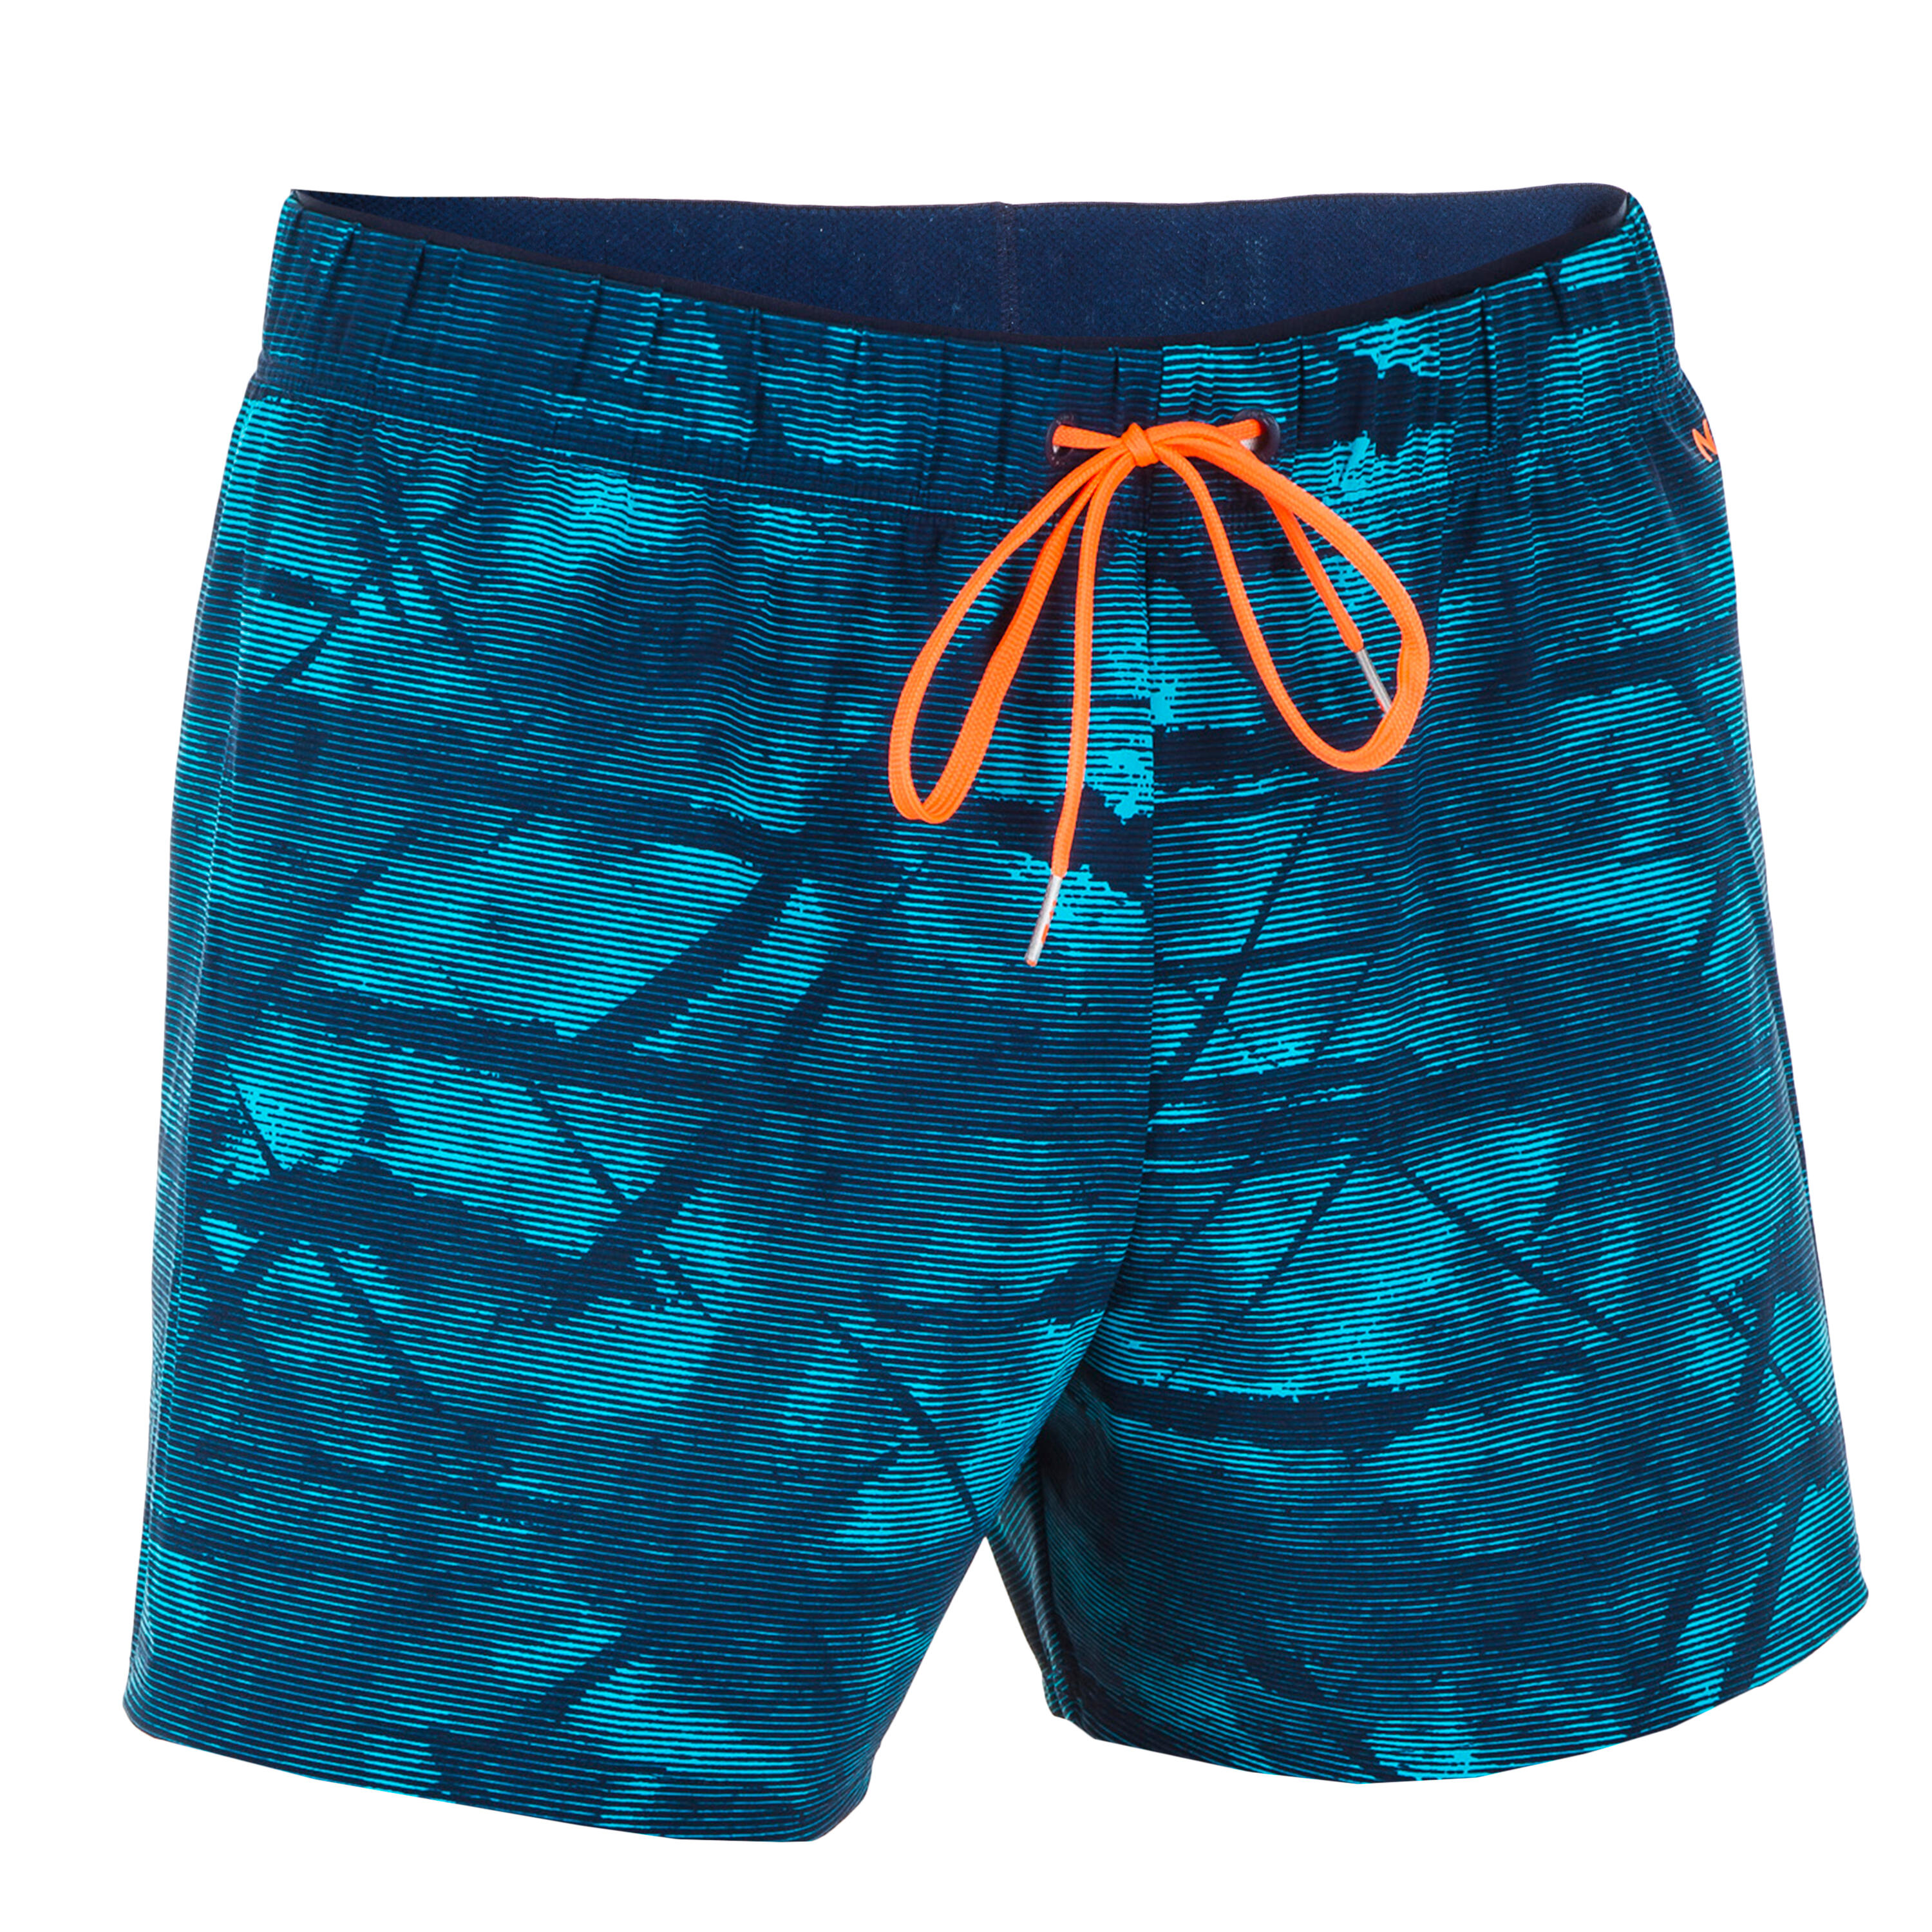 Vedolay Short Set for Men Casual Summer Beach Tropical Hawaii Sets,Blue XL  - Walmart.com